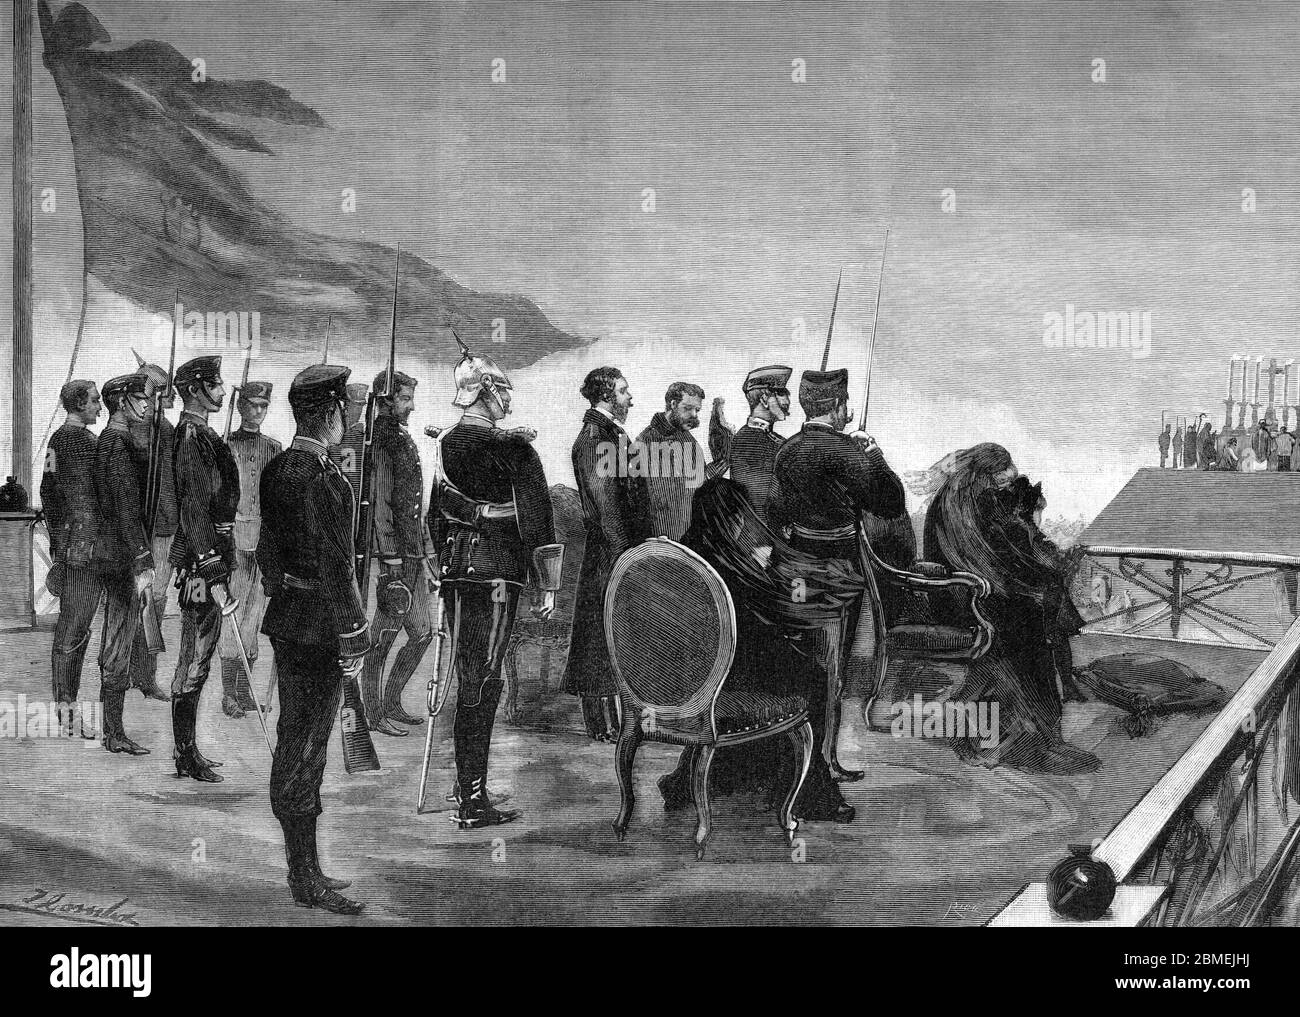 Madrid. Misa de campaña en Carabanchel en memoria de Alfonso XII de Borbón (1857-1885), rey de España. Grabado de 1886. Stock Photo